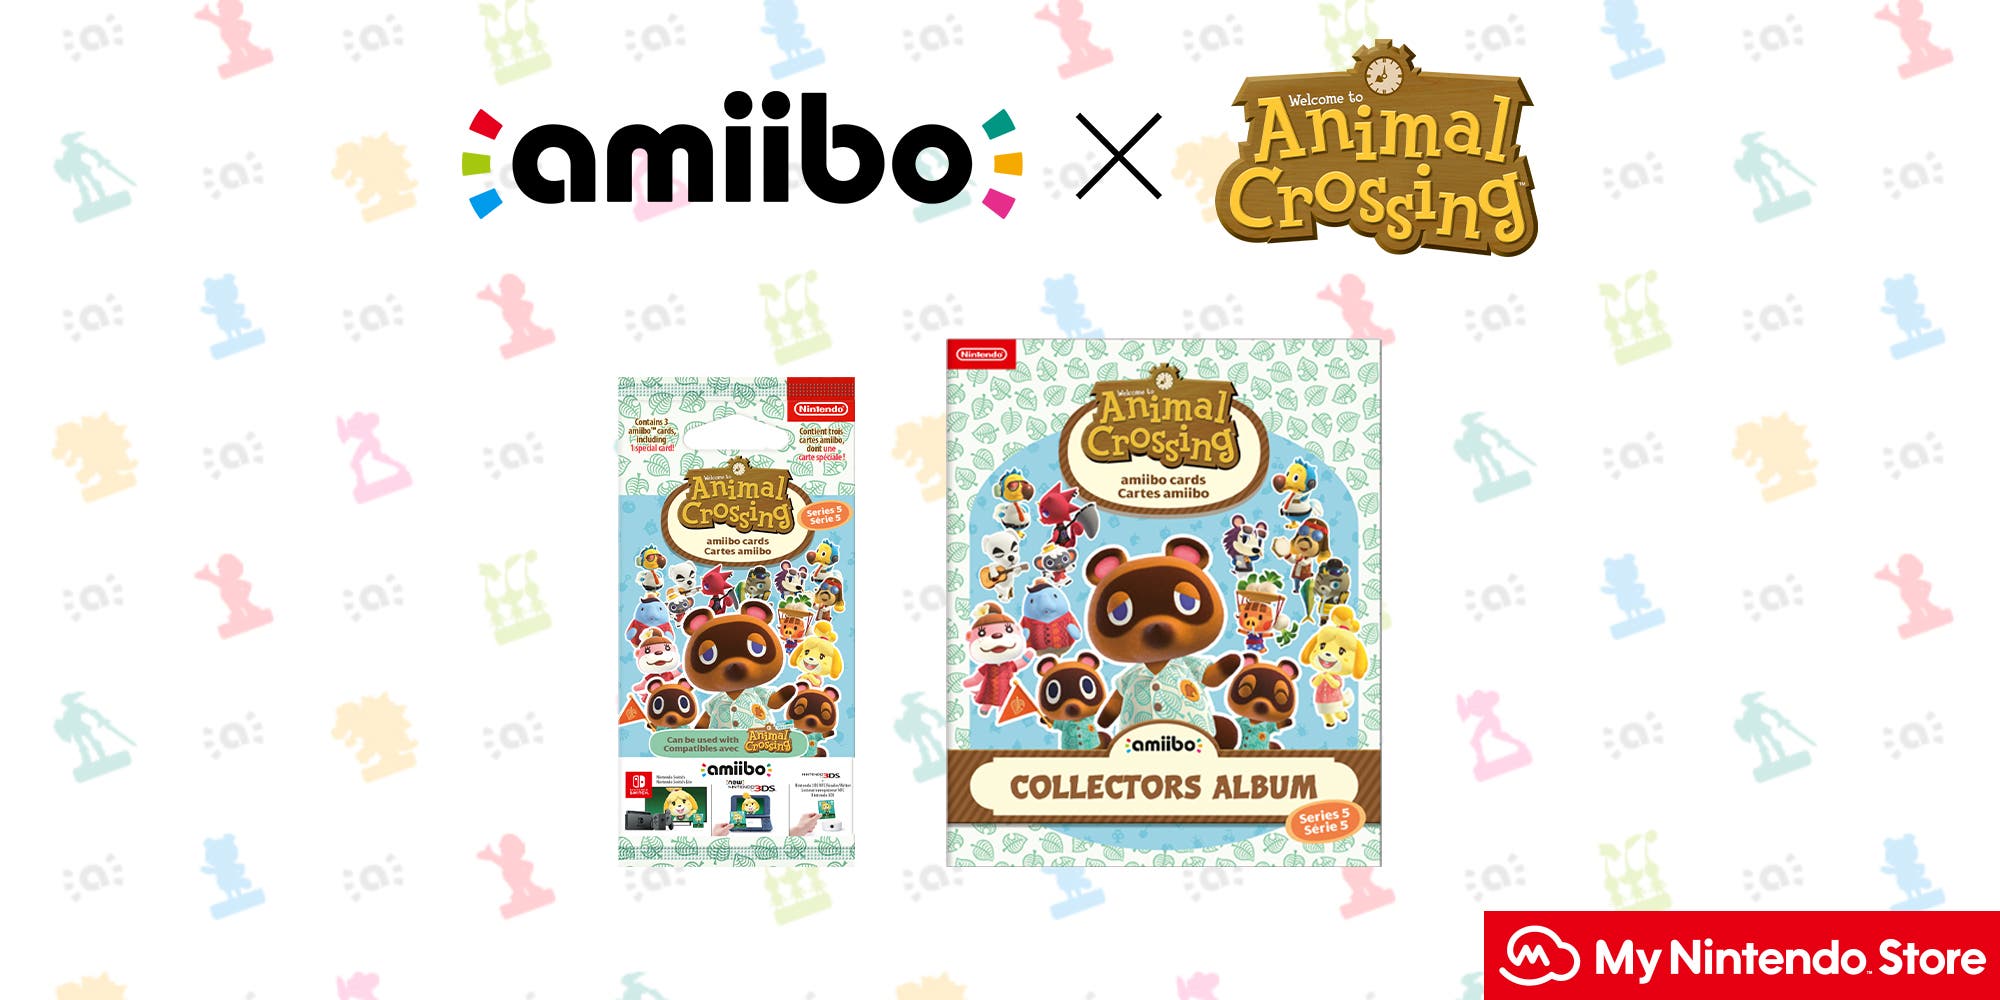 El álbum de la serie 5 de amiibo de Animal Crossing: New Horizons ya se encuentra a la venta en la My Nintendo Store